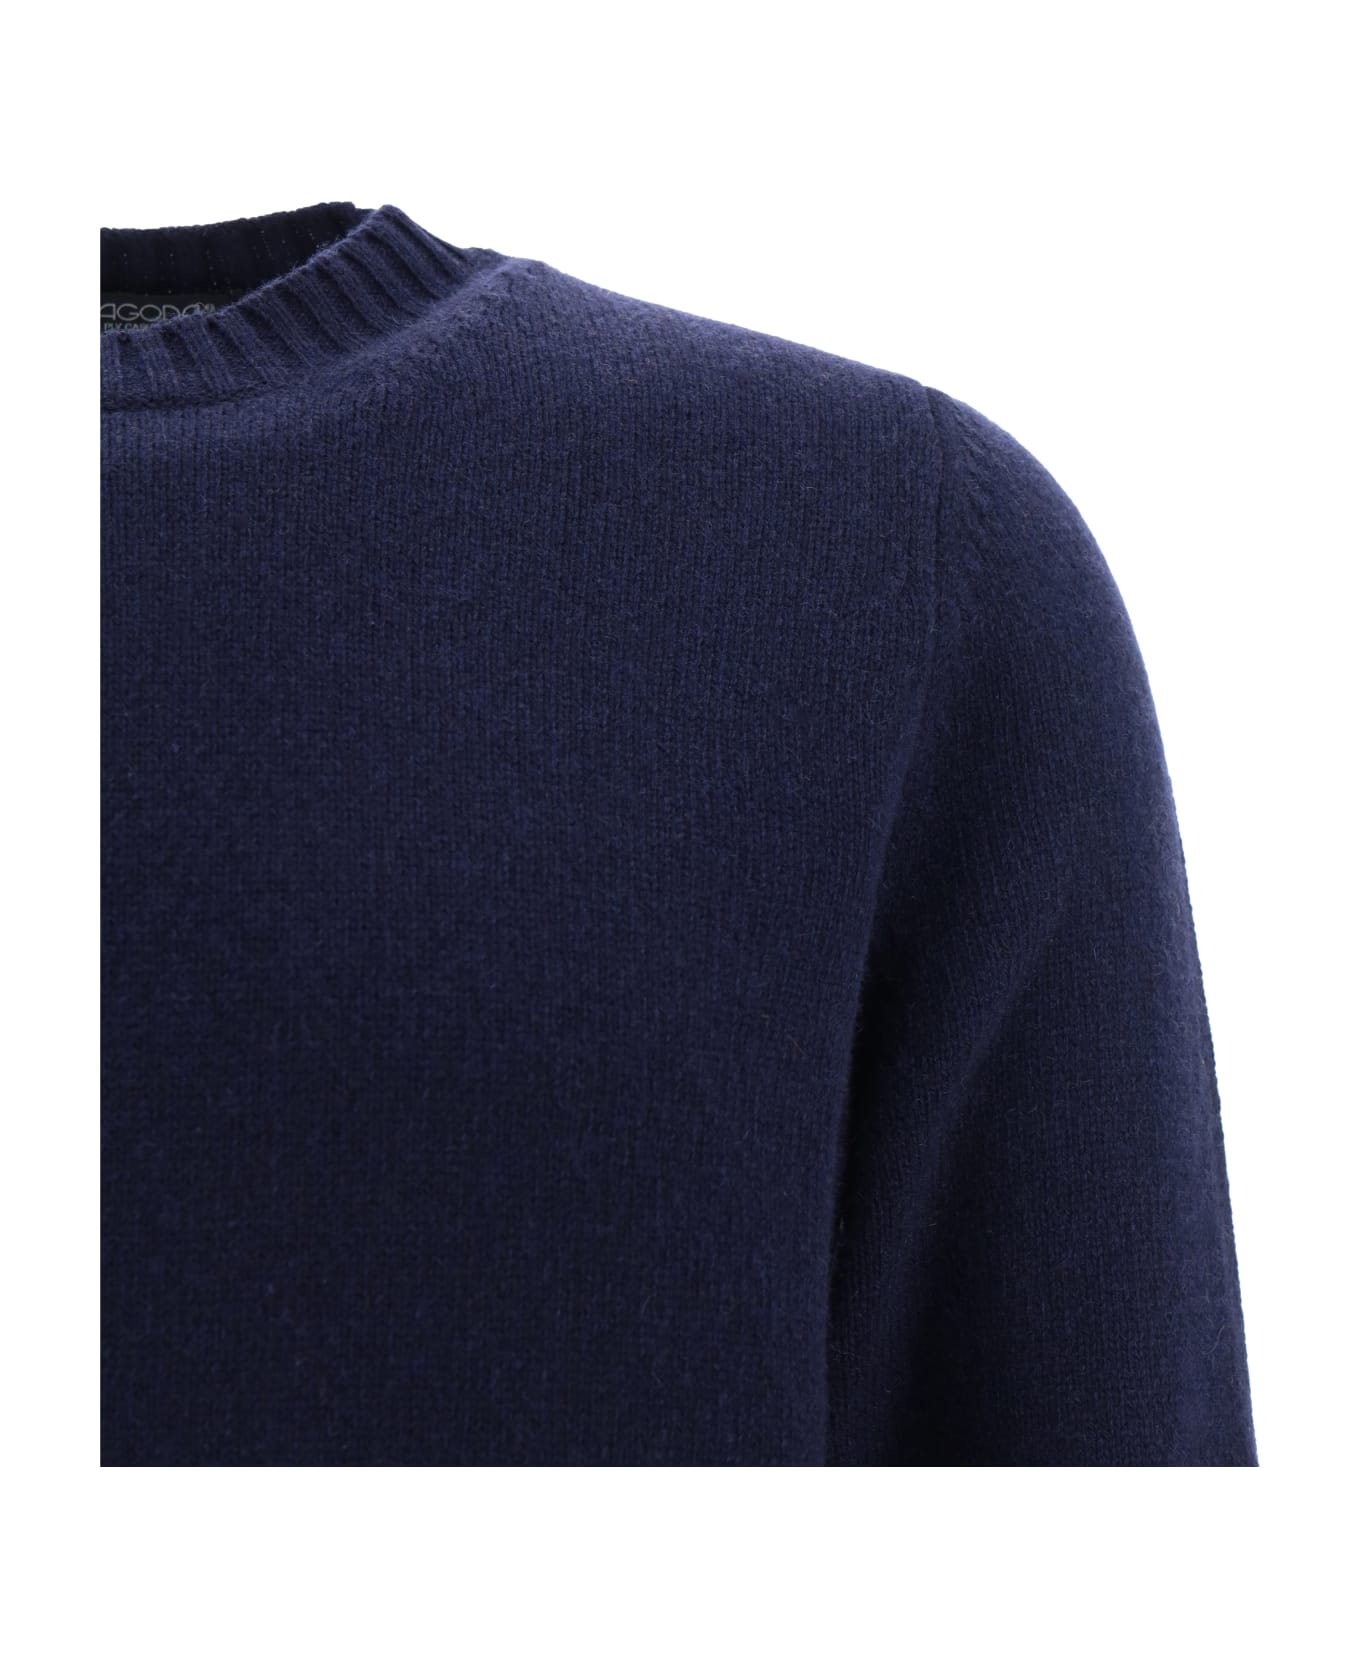 Aragona Sweater - Blu Notte